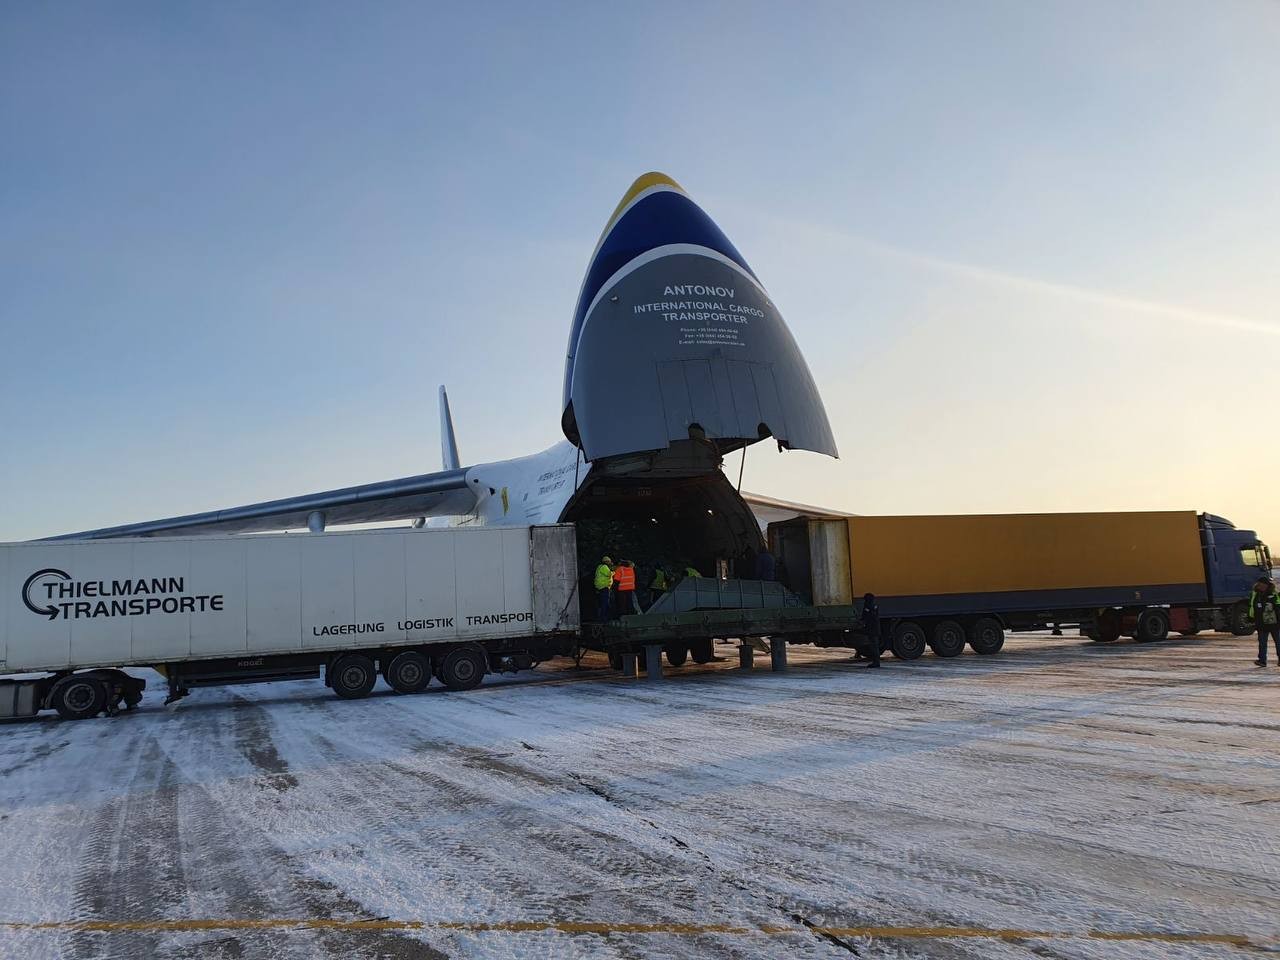 "Нова пошта" вперше доставила вантаж в Україну літаком Ан-124 «Руслан» - це 135 тис. замовлень з Китаю вагою 65 тонн